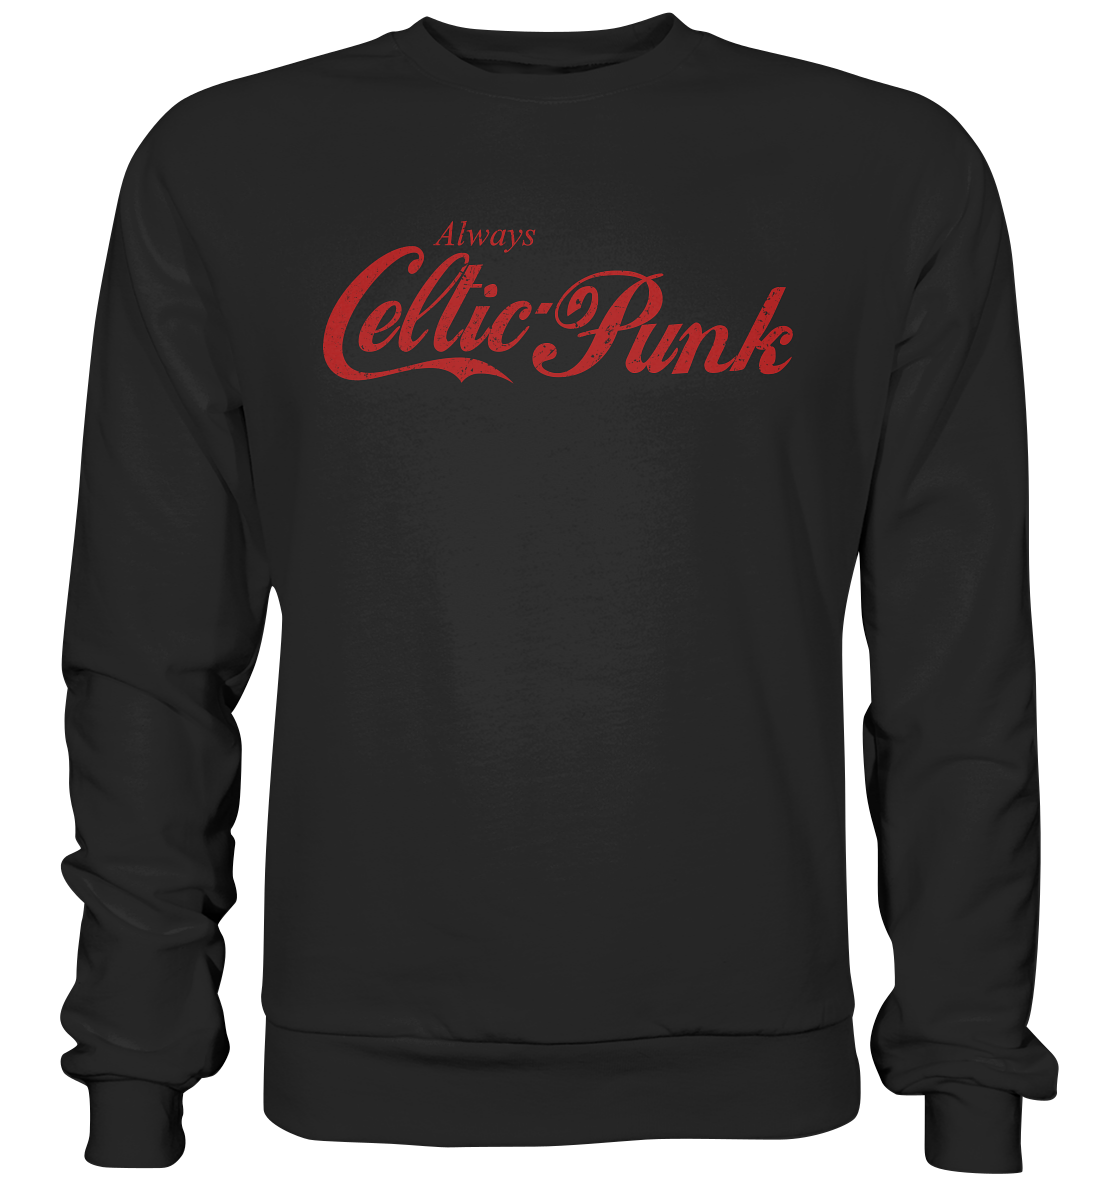 Always "Celtic Punk" - Premium Sweatshirt